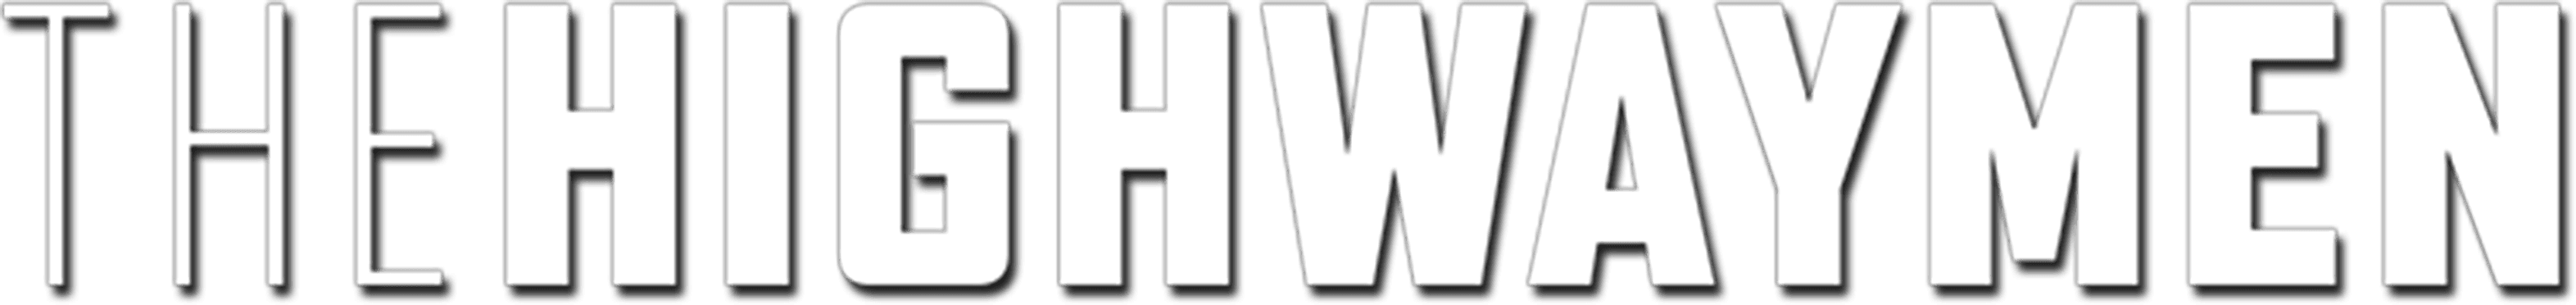 The Highwaymen logo